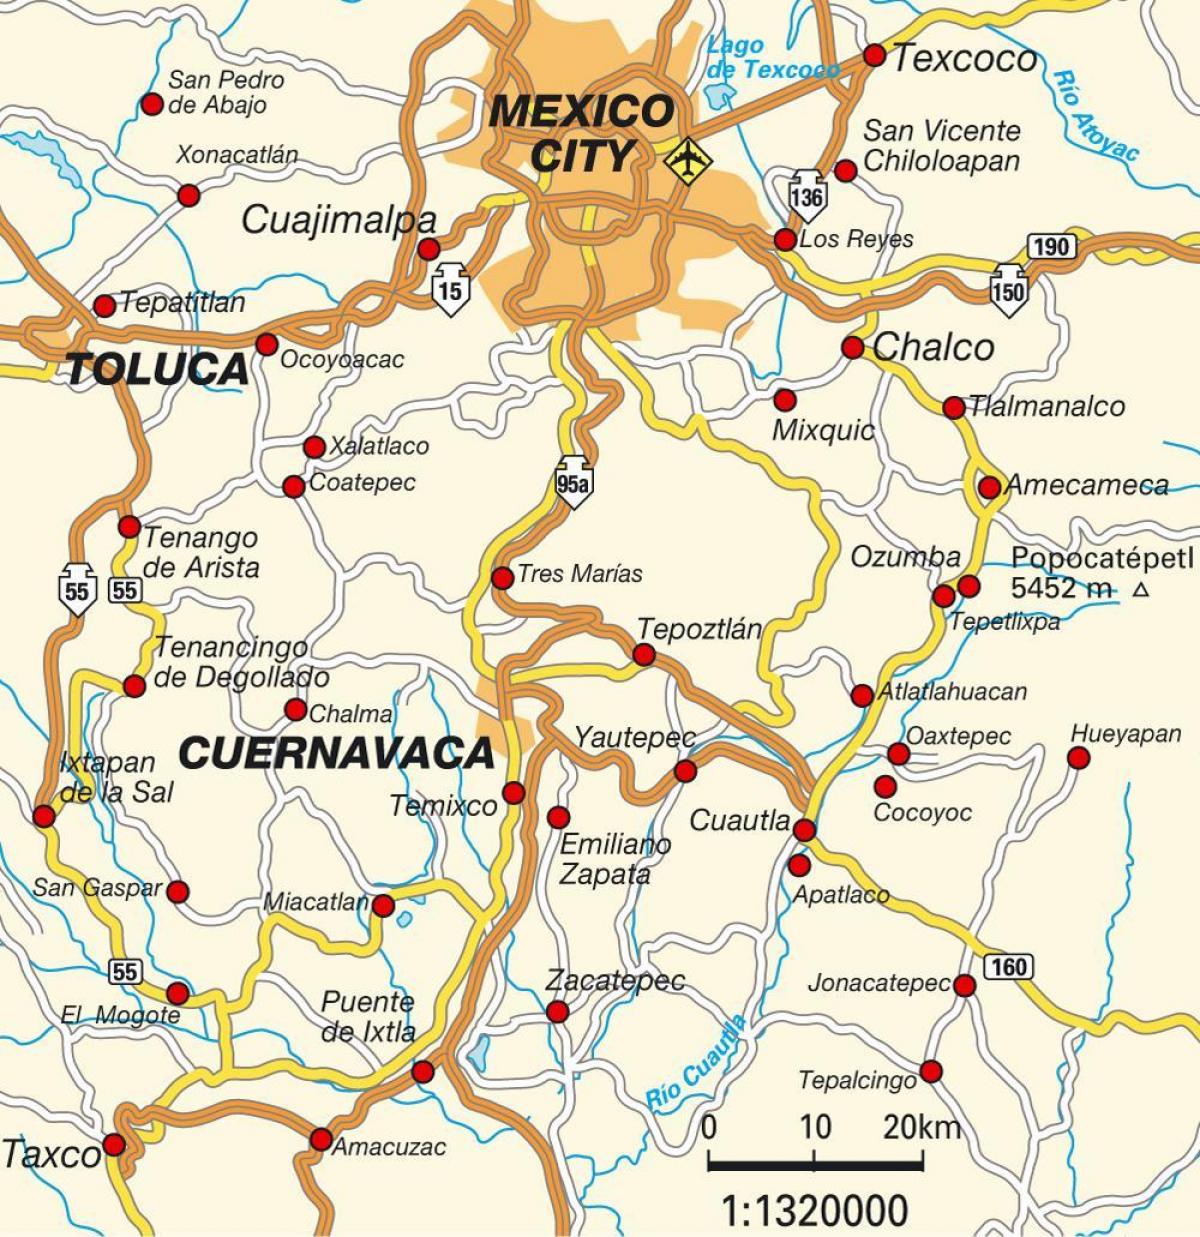 મેક્સિકો સિટી ડીએફ નકશો